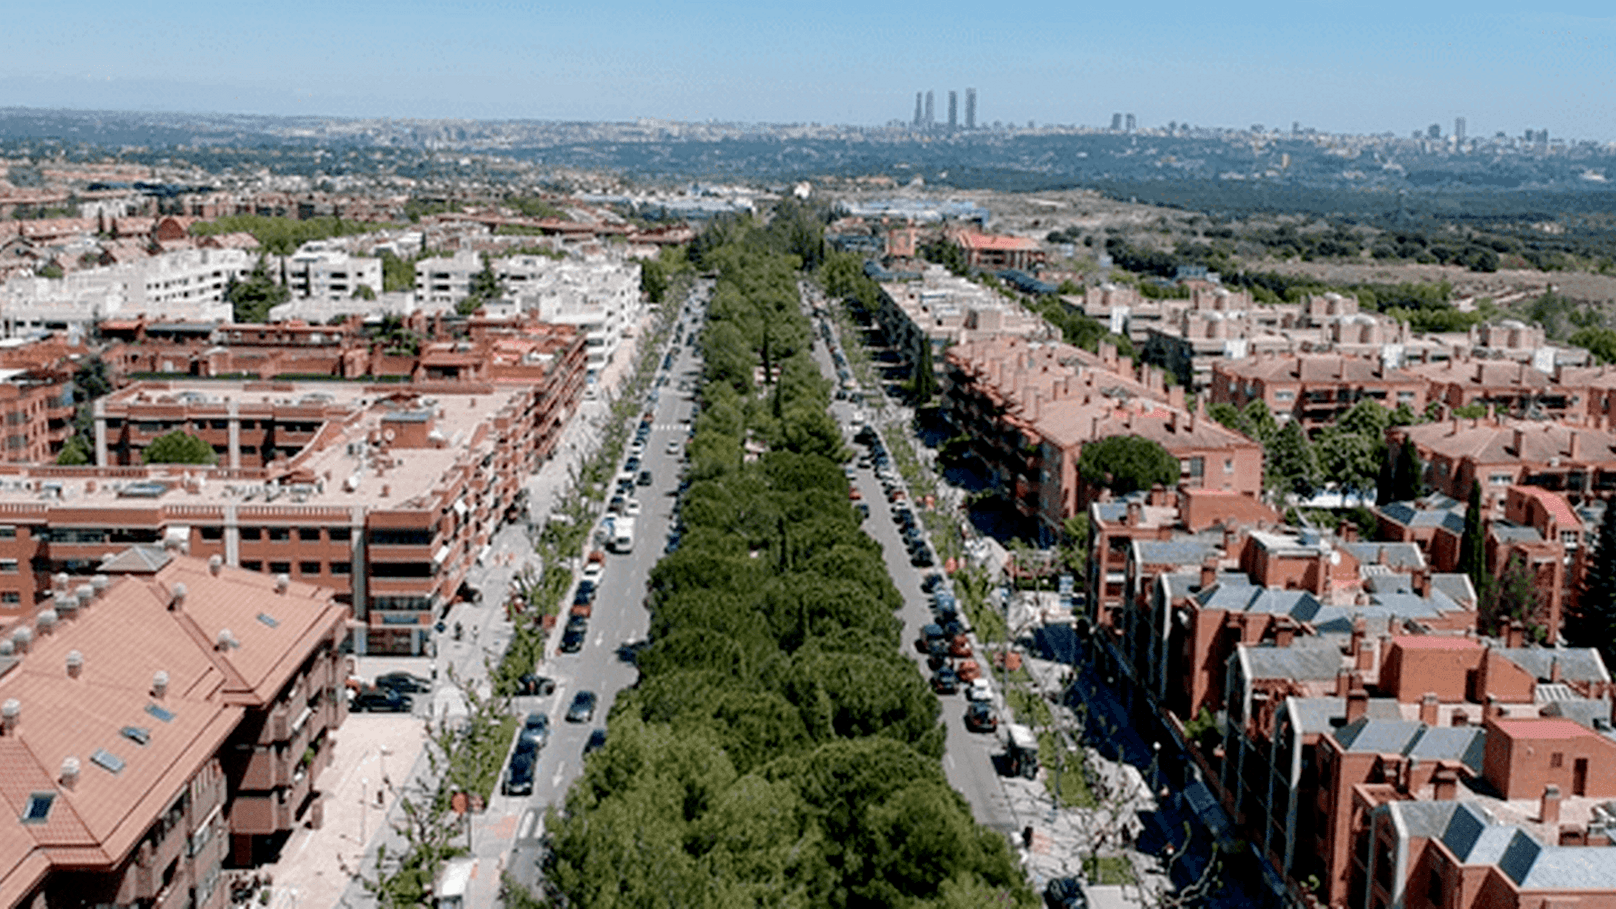 Los alquileres subieron en Pozuelo un 9,6% en 2021 mientras que en la Comunidad de Madrid bajaron de media un 3,4%